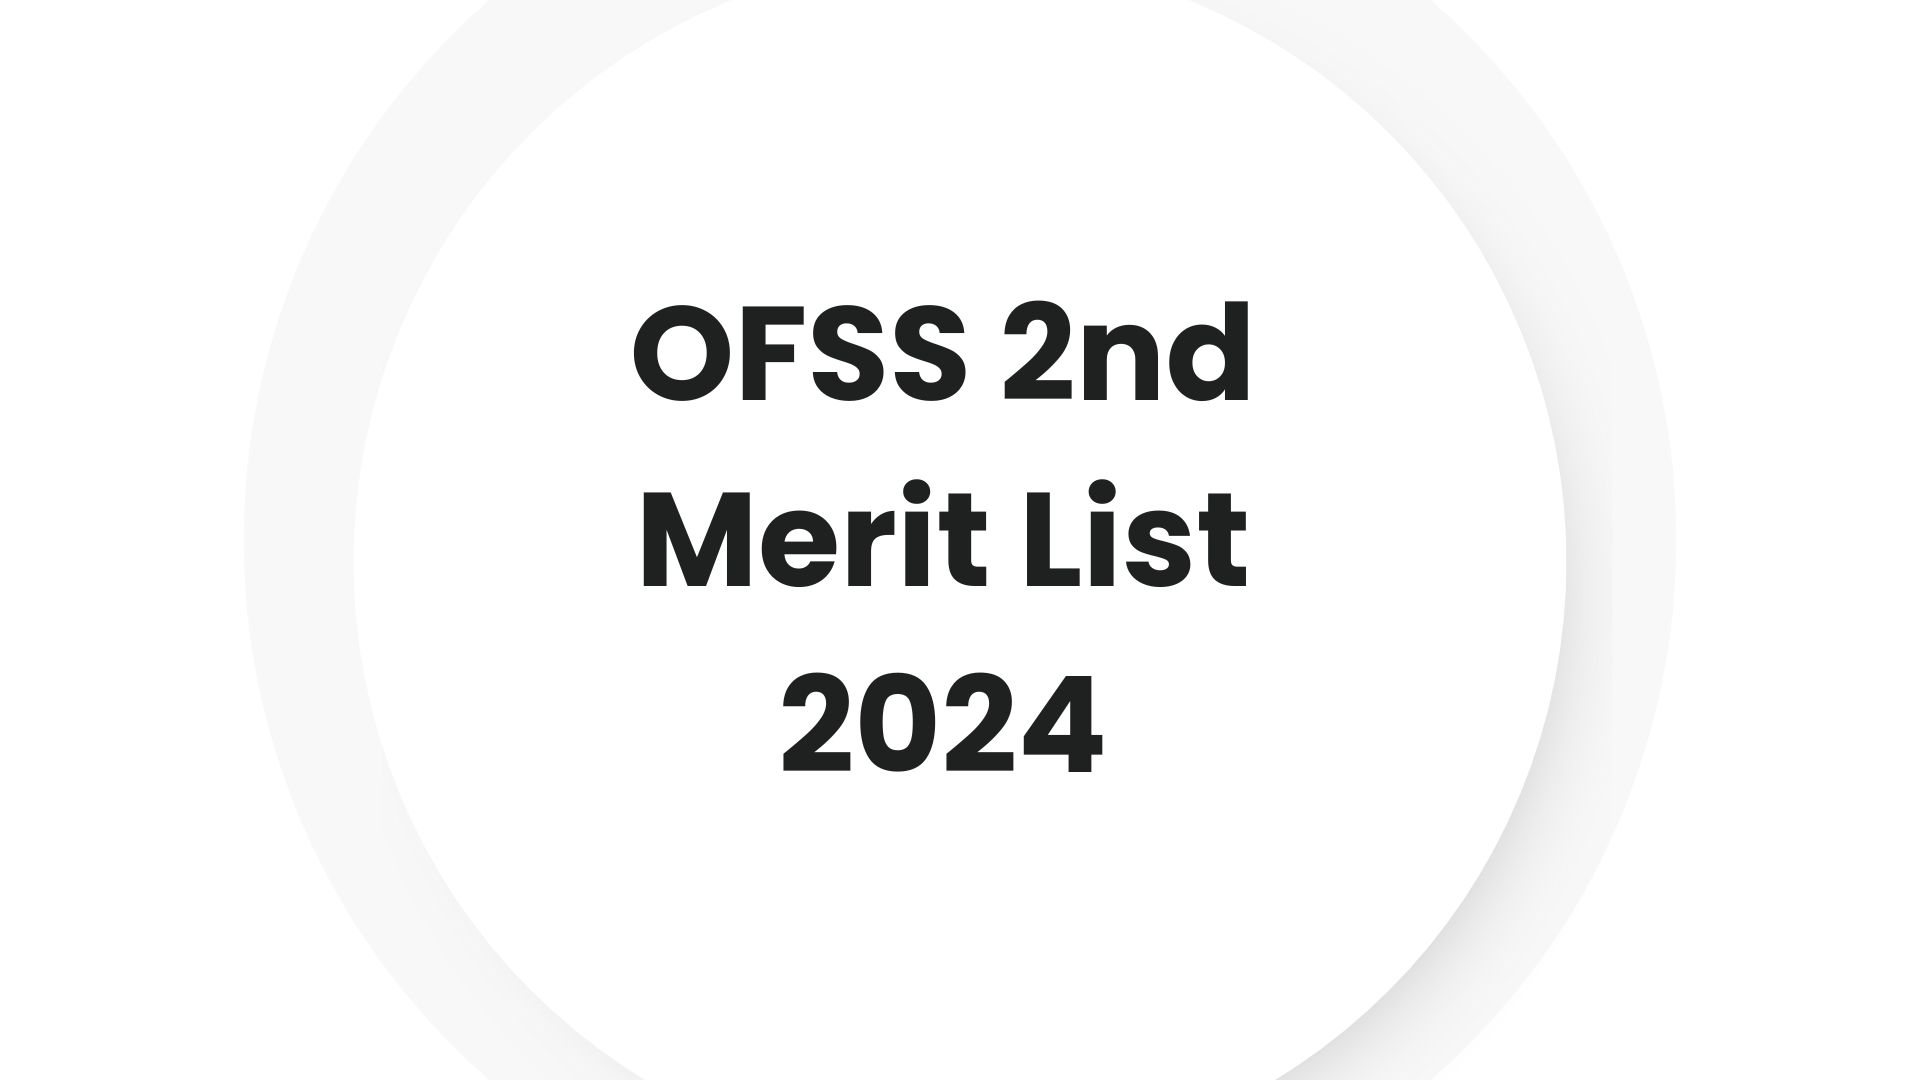 OFSS 2nd Merit List 2024